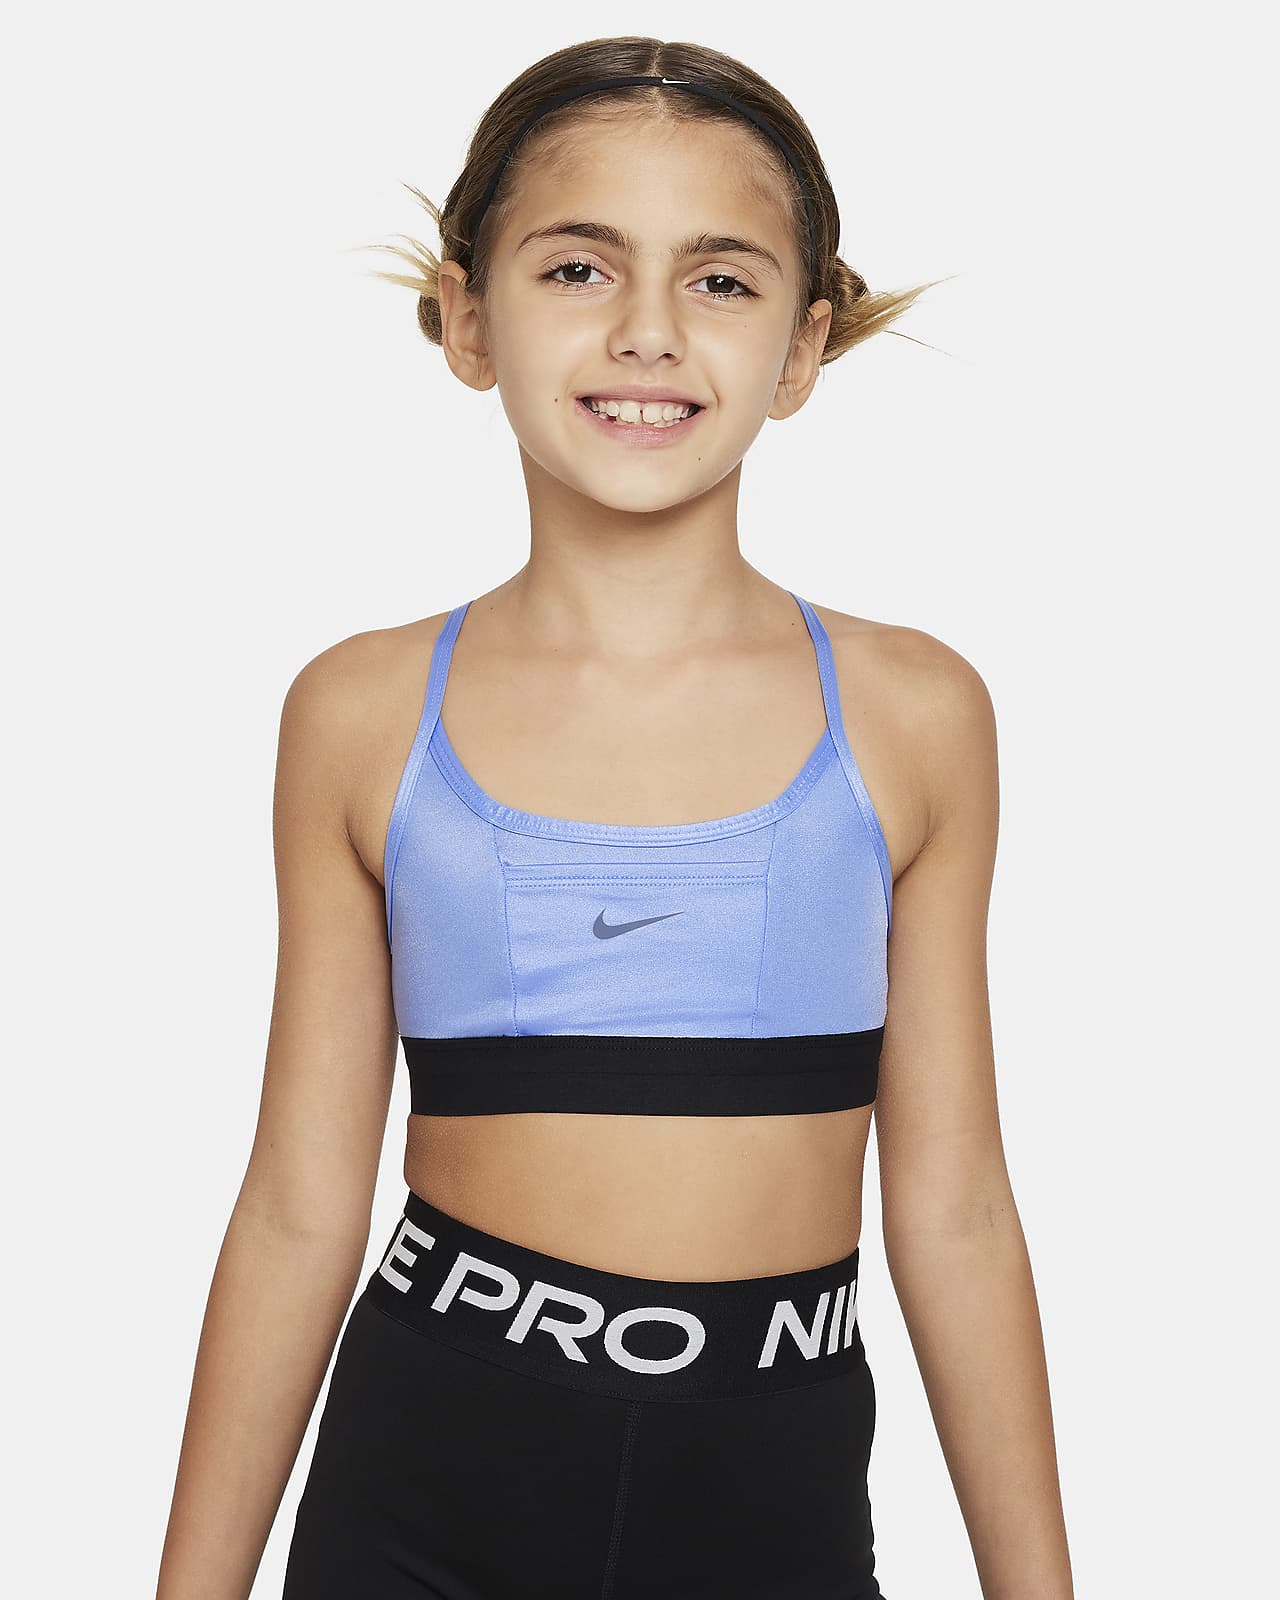 NIKE Pro Girls Sports Bra Size S  Girls sports bras, Sports bra